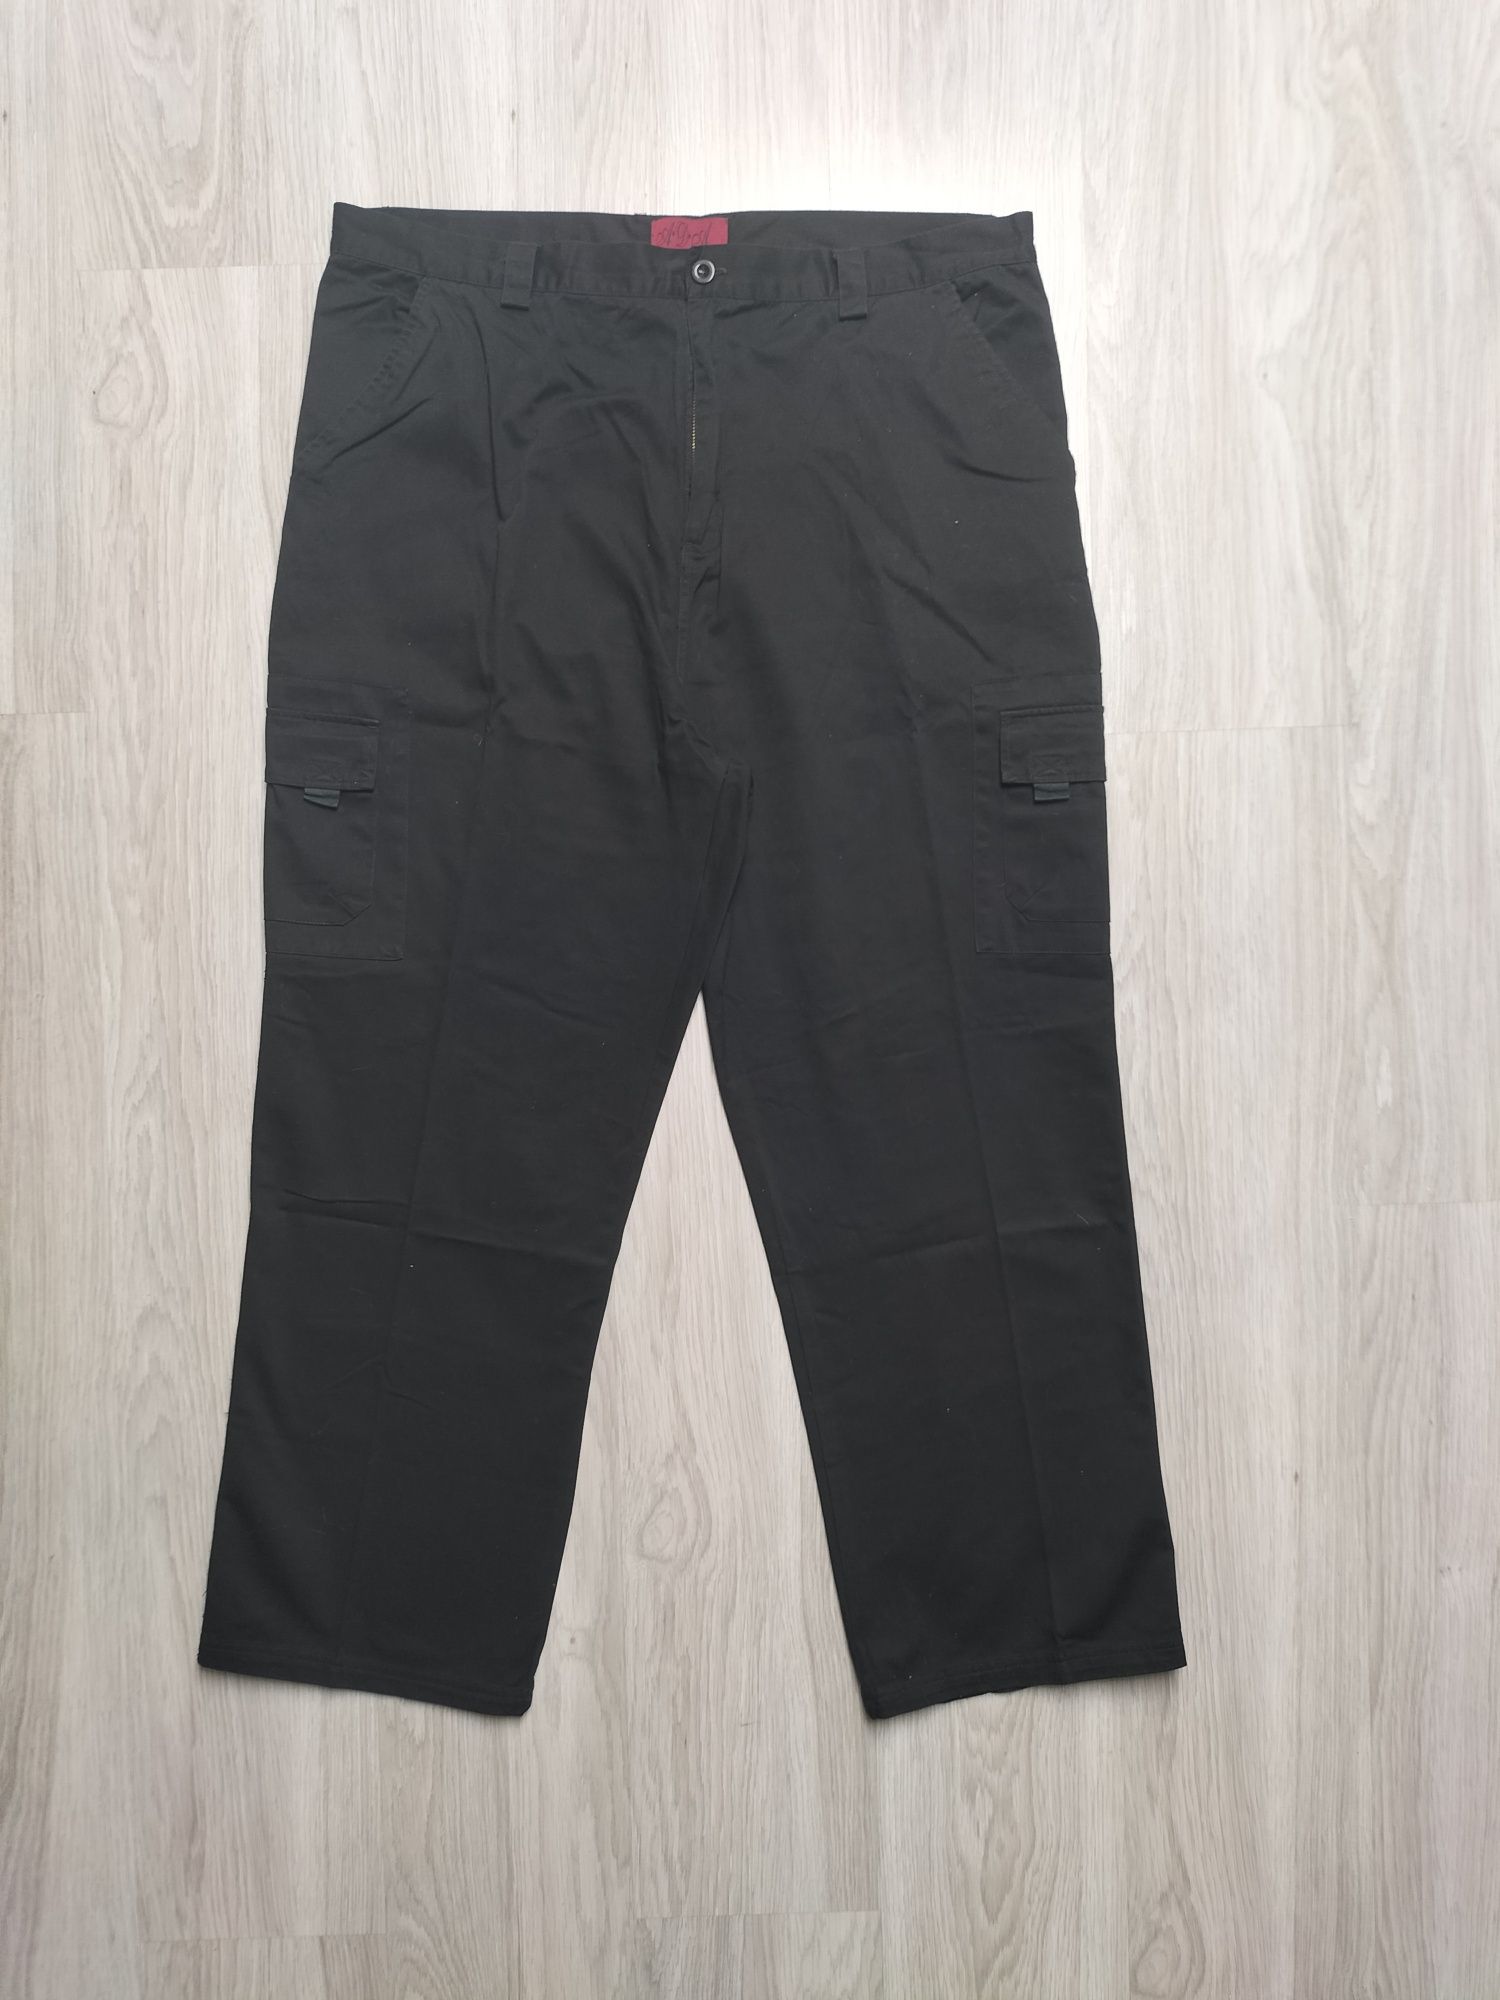 Duże szerokie prosta nogawka czarne bojówki spodnie męskie XXXL 3XL